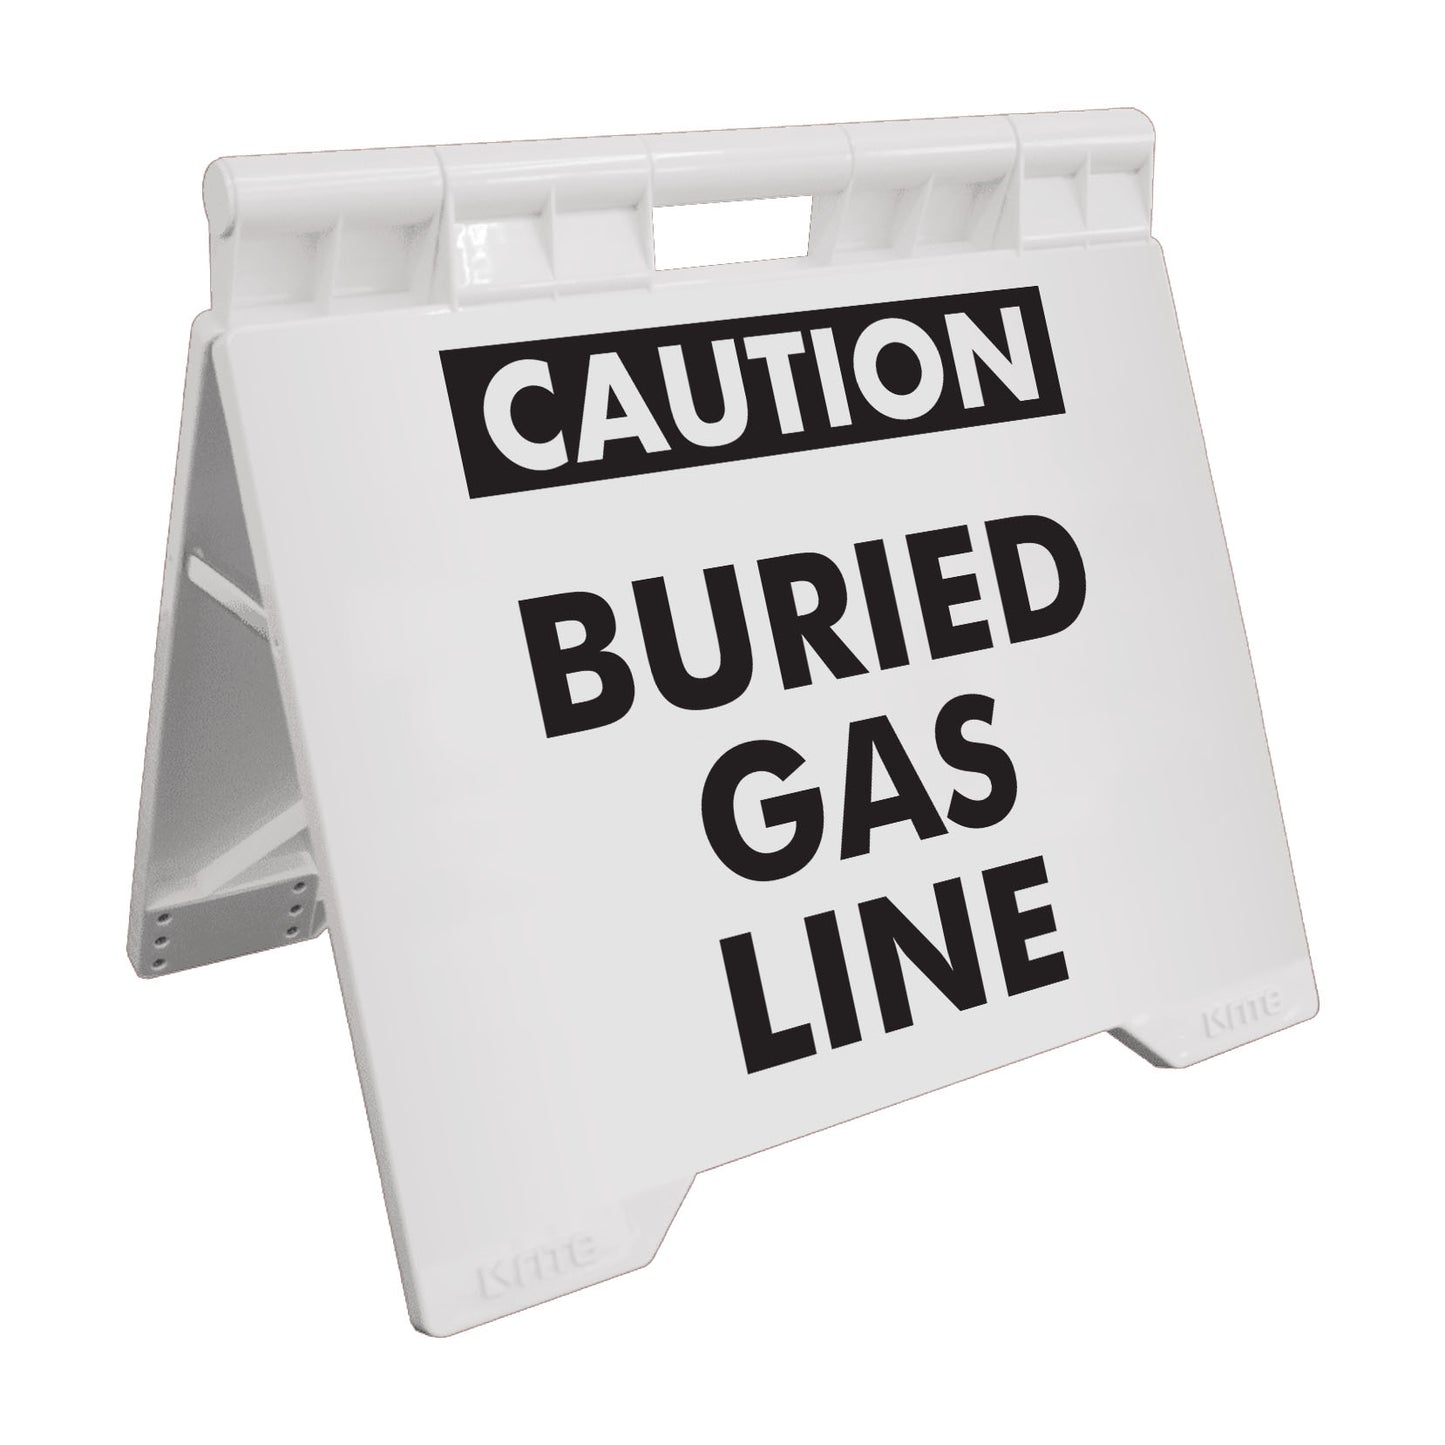 Caution Buried Gas Line - Evarite A-Frame Sign